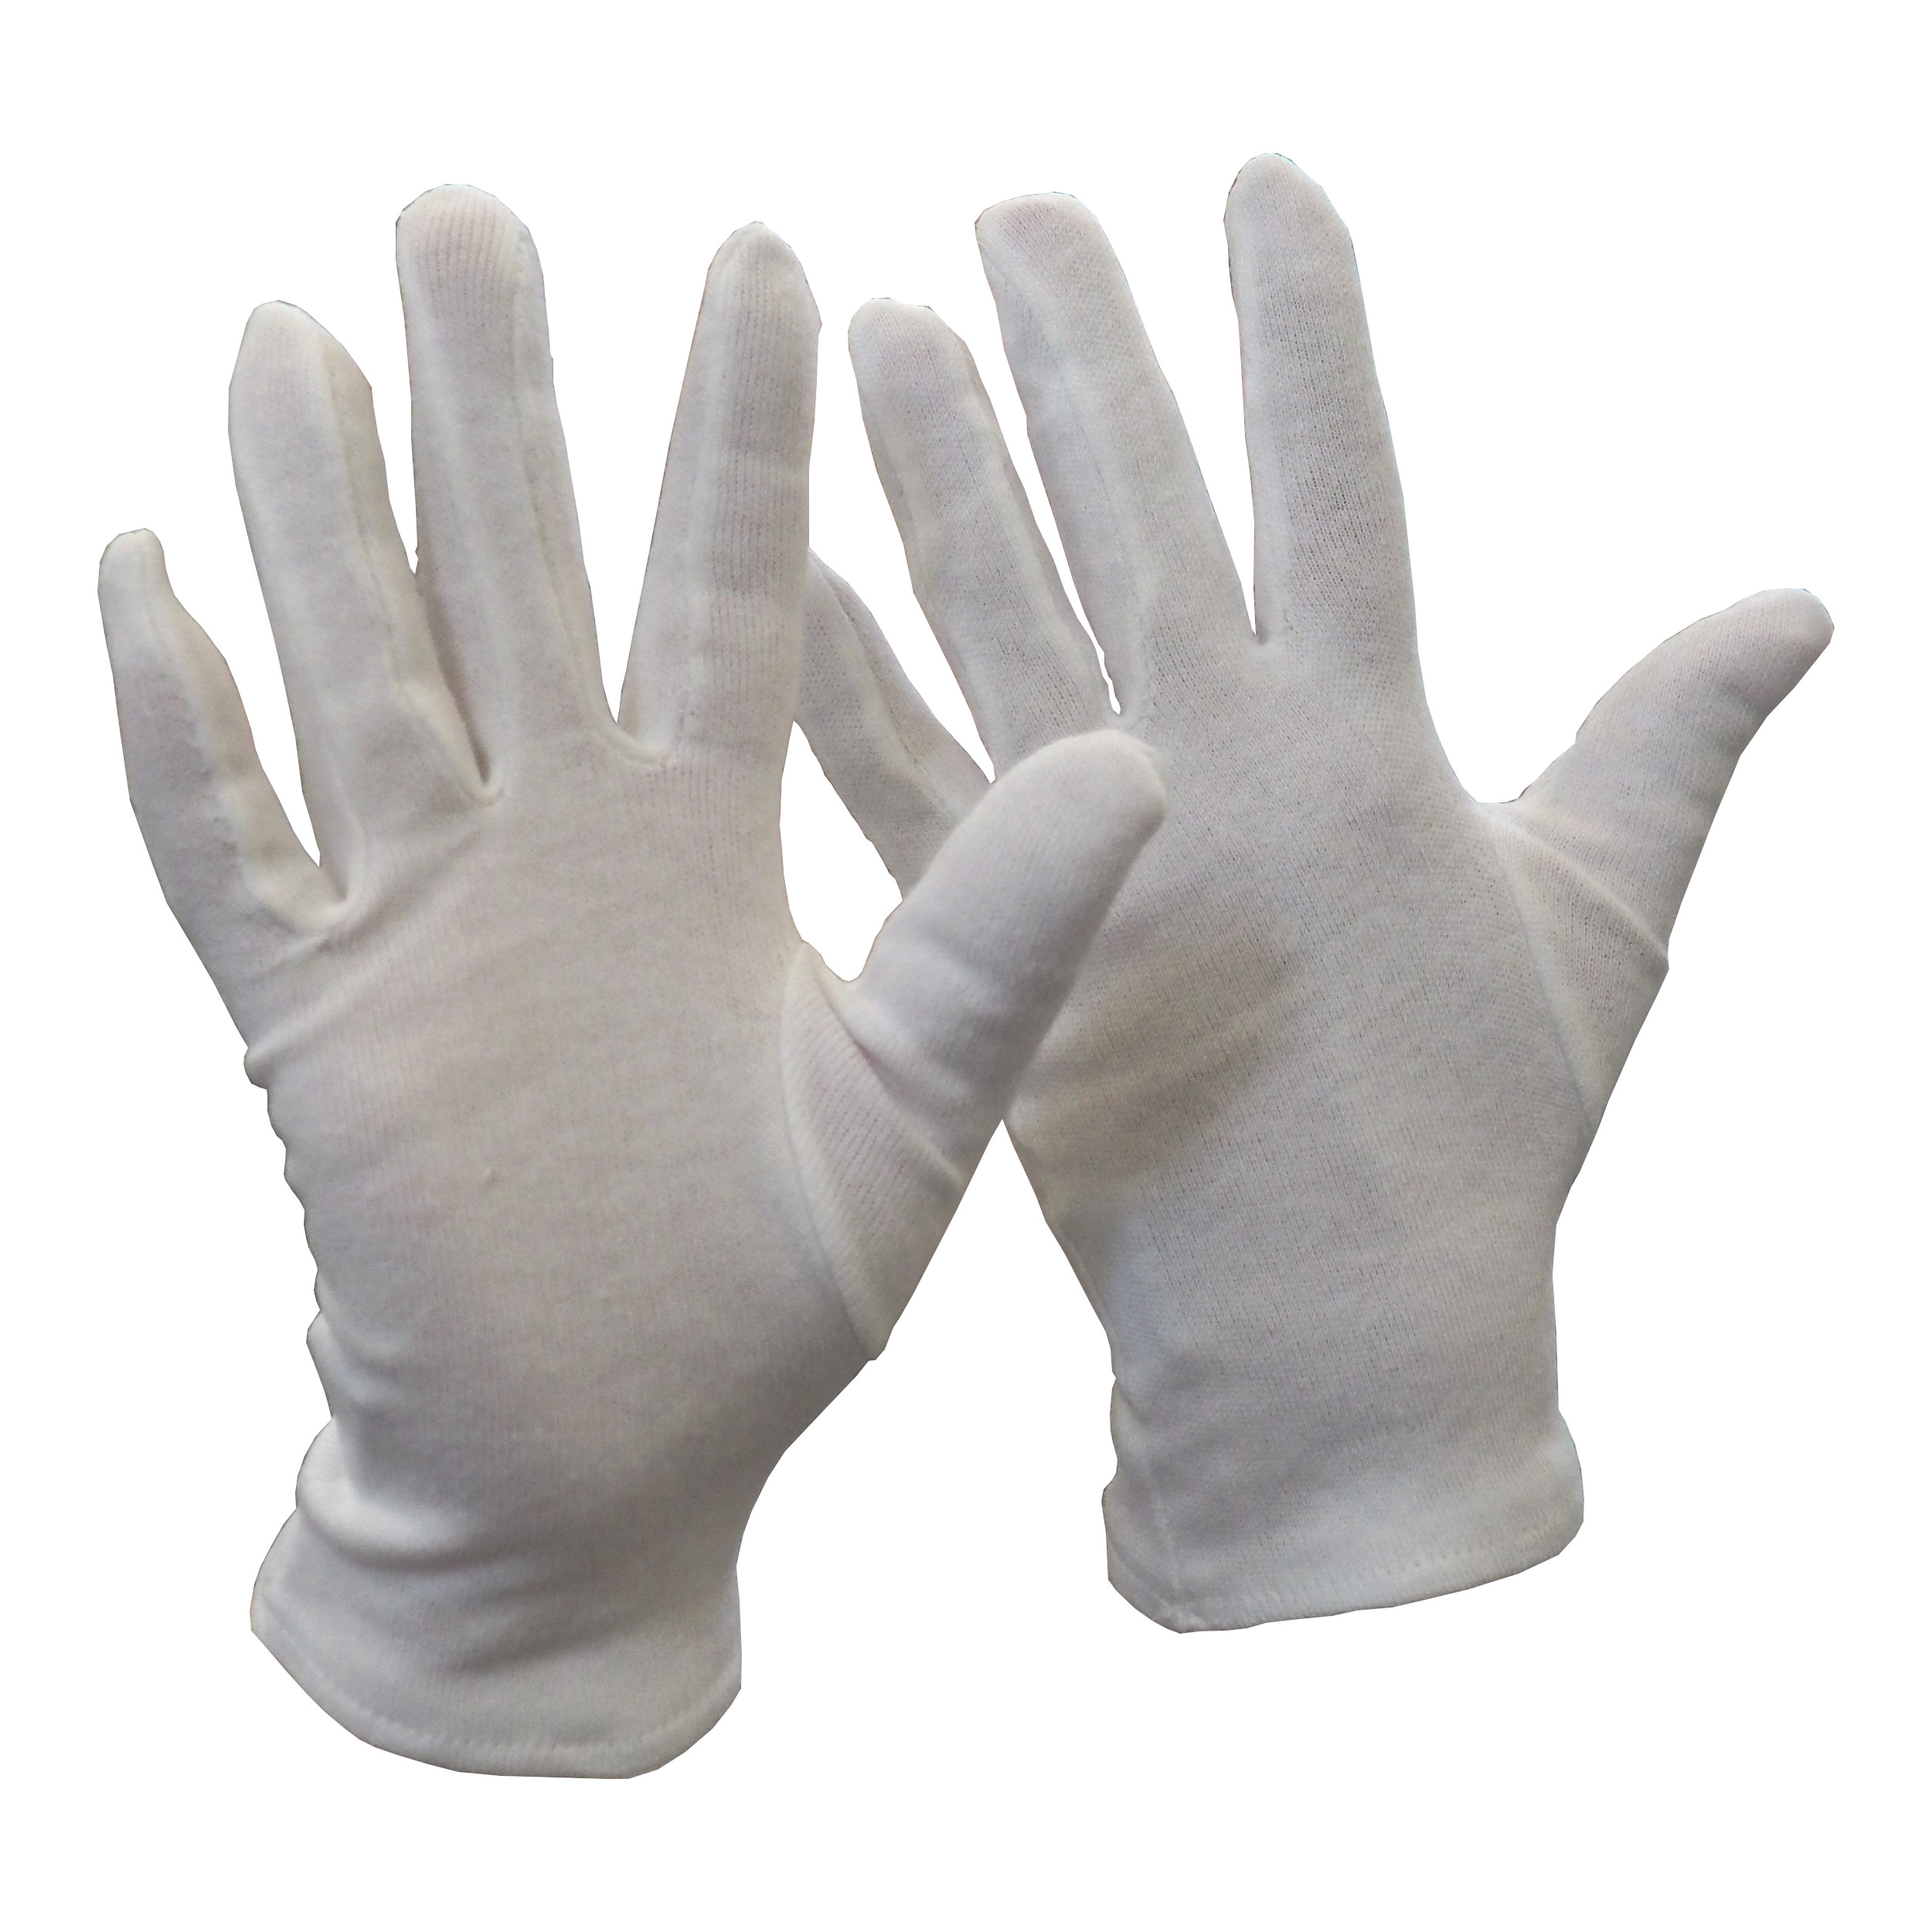 rukavice FAWA, textilní, bílé, velikost 11 0.03 Kg TOP Sklad4 606075 62